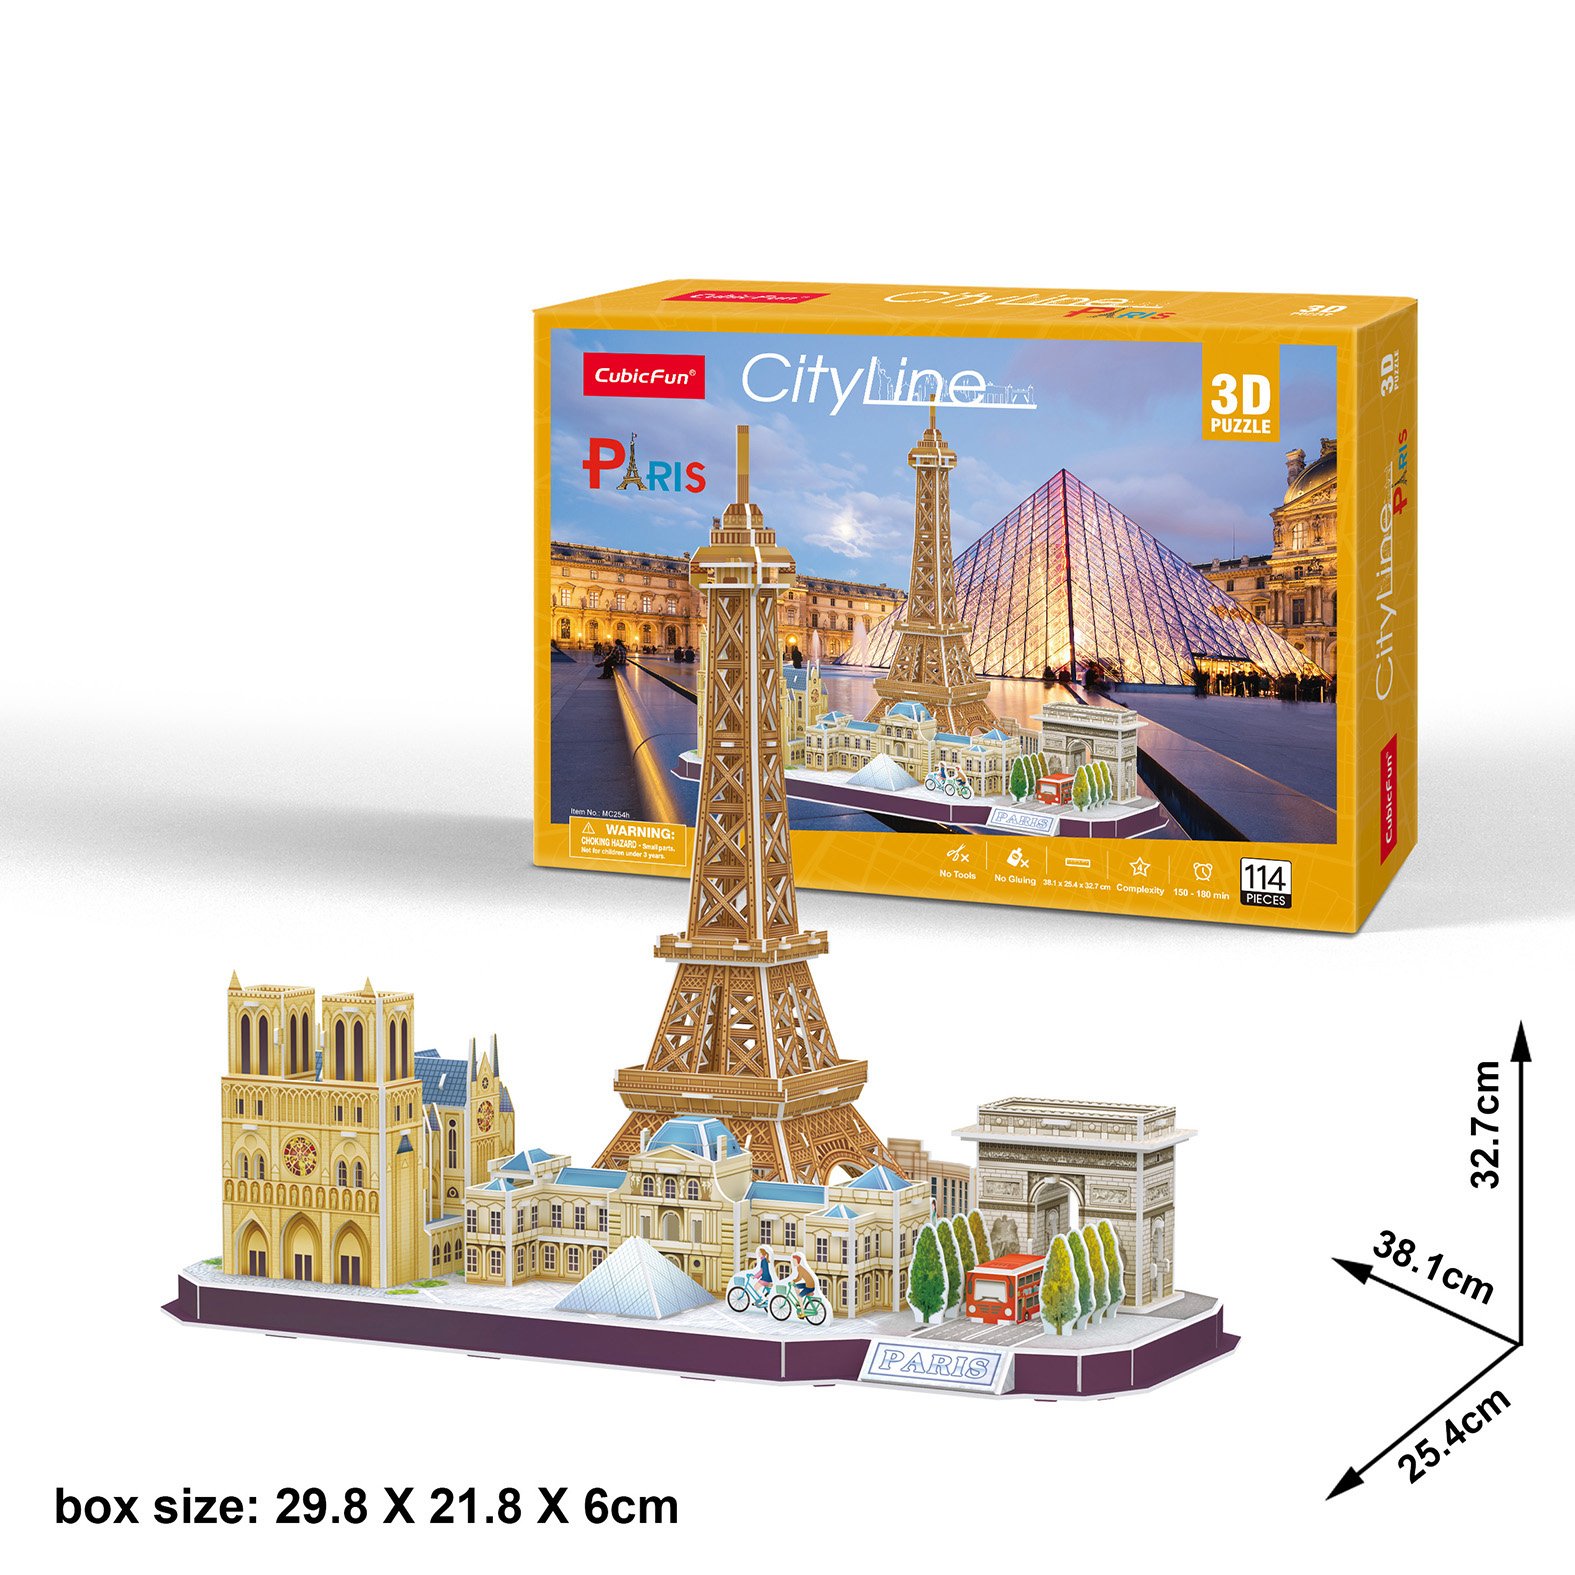 Пазл 3D CubicFun City Line Paris, 114 элементов (MC254h) - фото 4